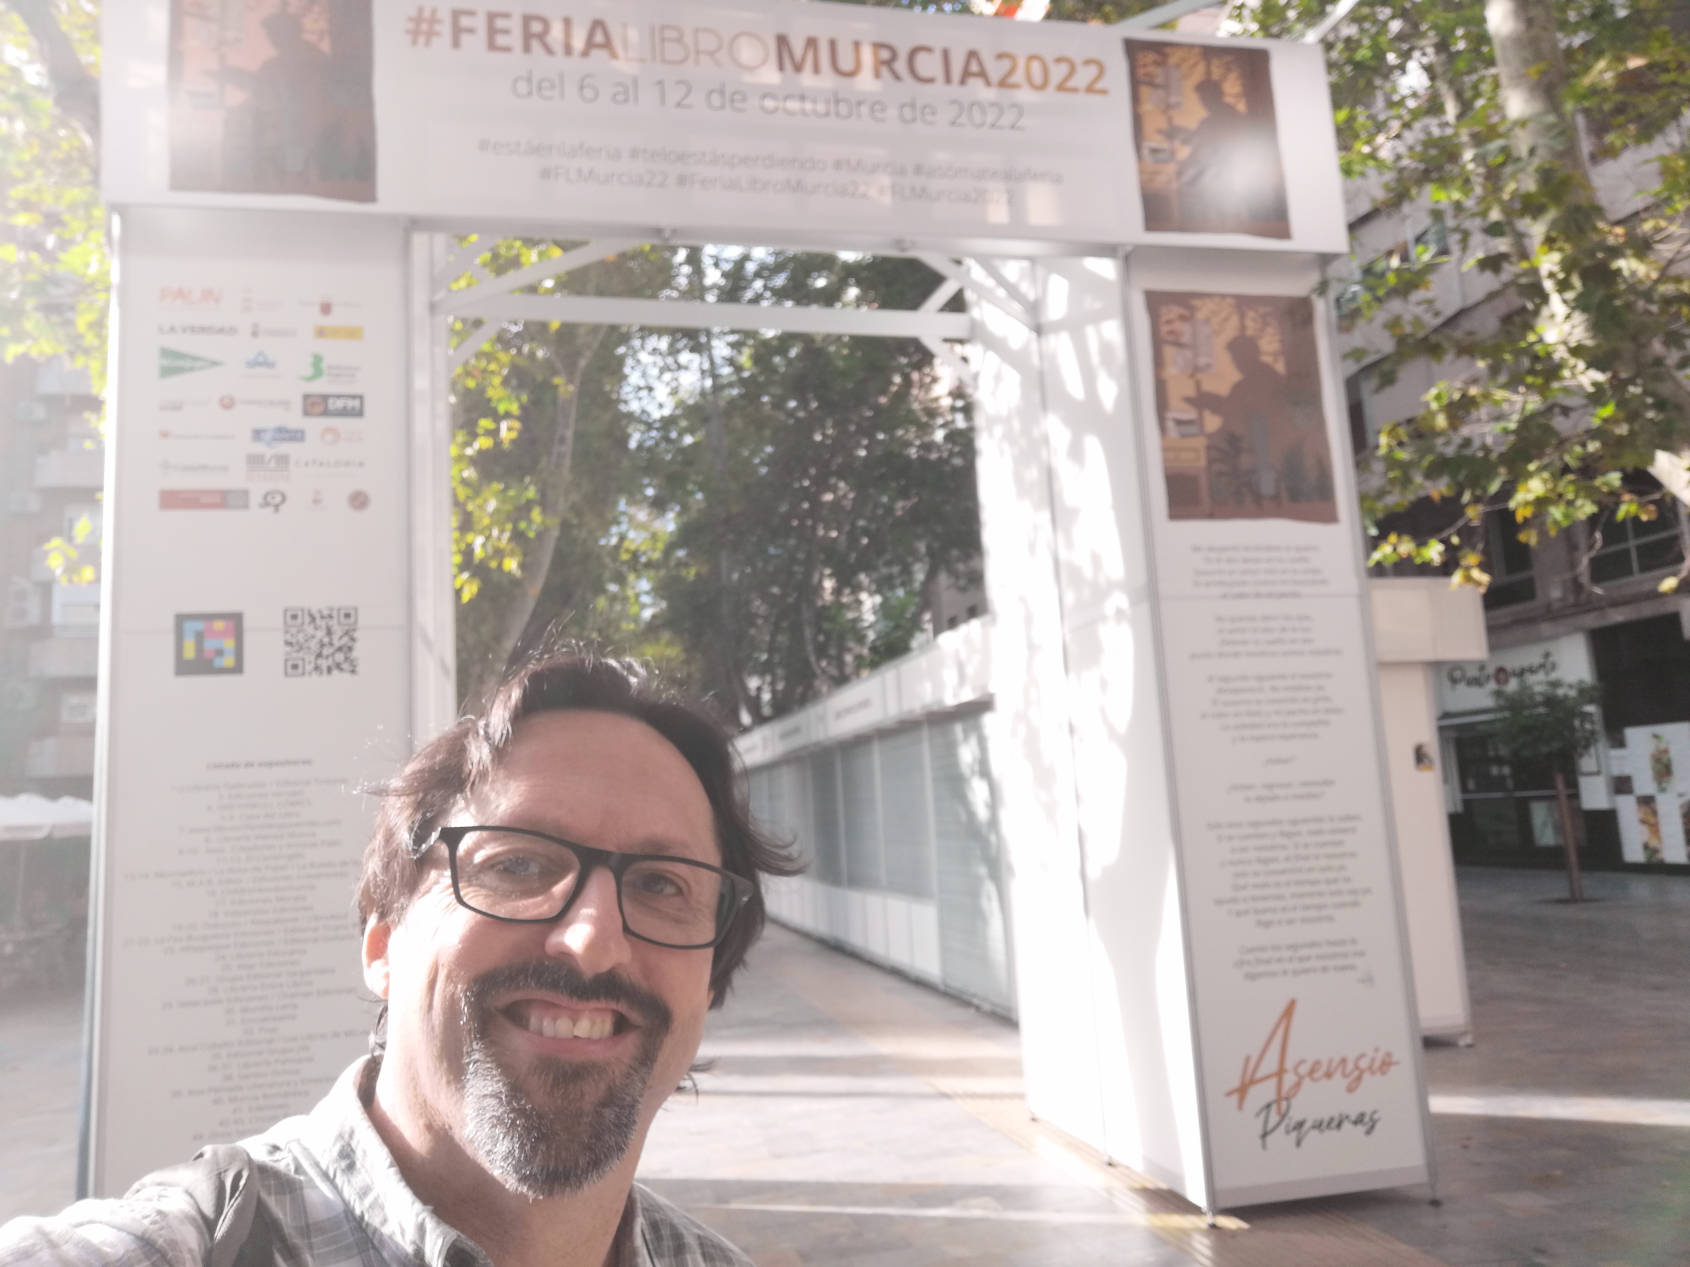 Sergio Reyes posa frente a una de las portadas ya terminada minutos antes del comienzo de la Feria del libro de Murcia 2022